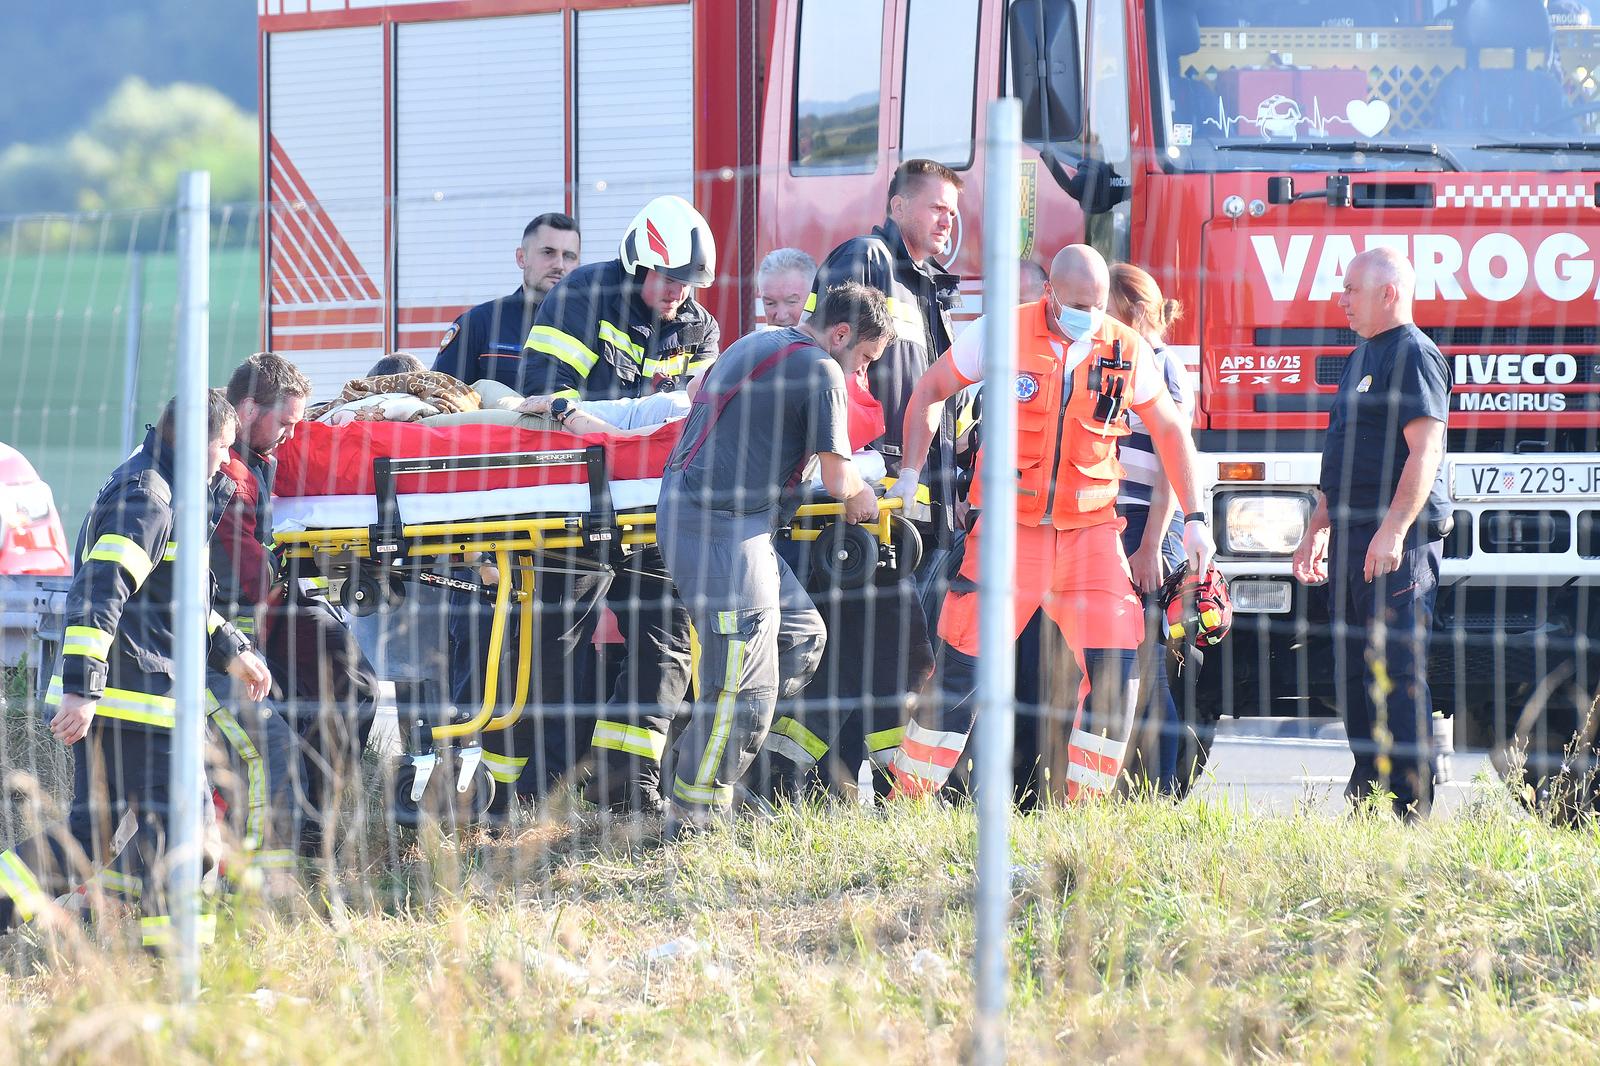 Najmanje 11 ljudi poginulo je, a veći je broj teško ozlijeđen u prometnoj nesreći koja se oko 5:40 sati dogodila na autocesti A4 u smjeru Zagreba, između mjesta Jarek Bisaški i Podvorec, kada je s kolnika sletio autobusa poljskih nacionalnih registarskih oznaka. Ozlijeđene prevoze u bolnice u Zagrebu i Varaždinu.